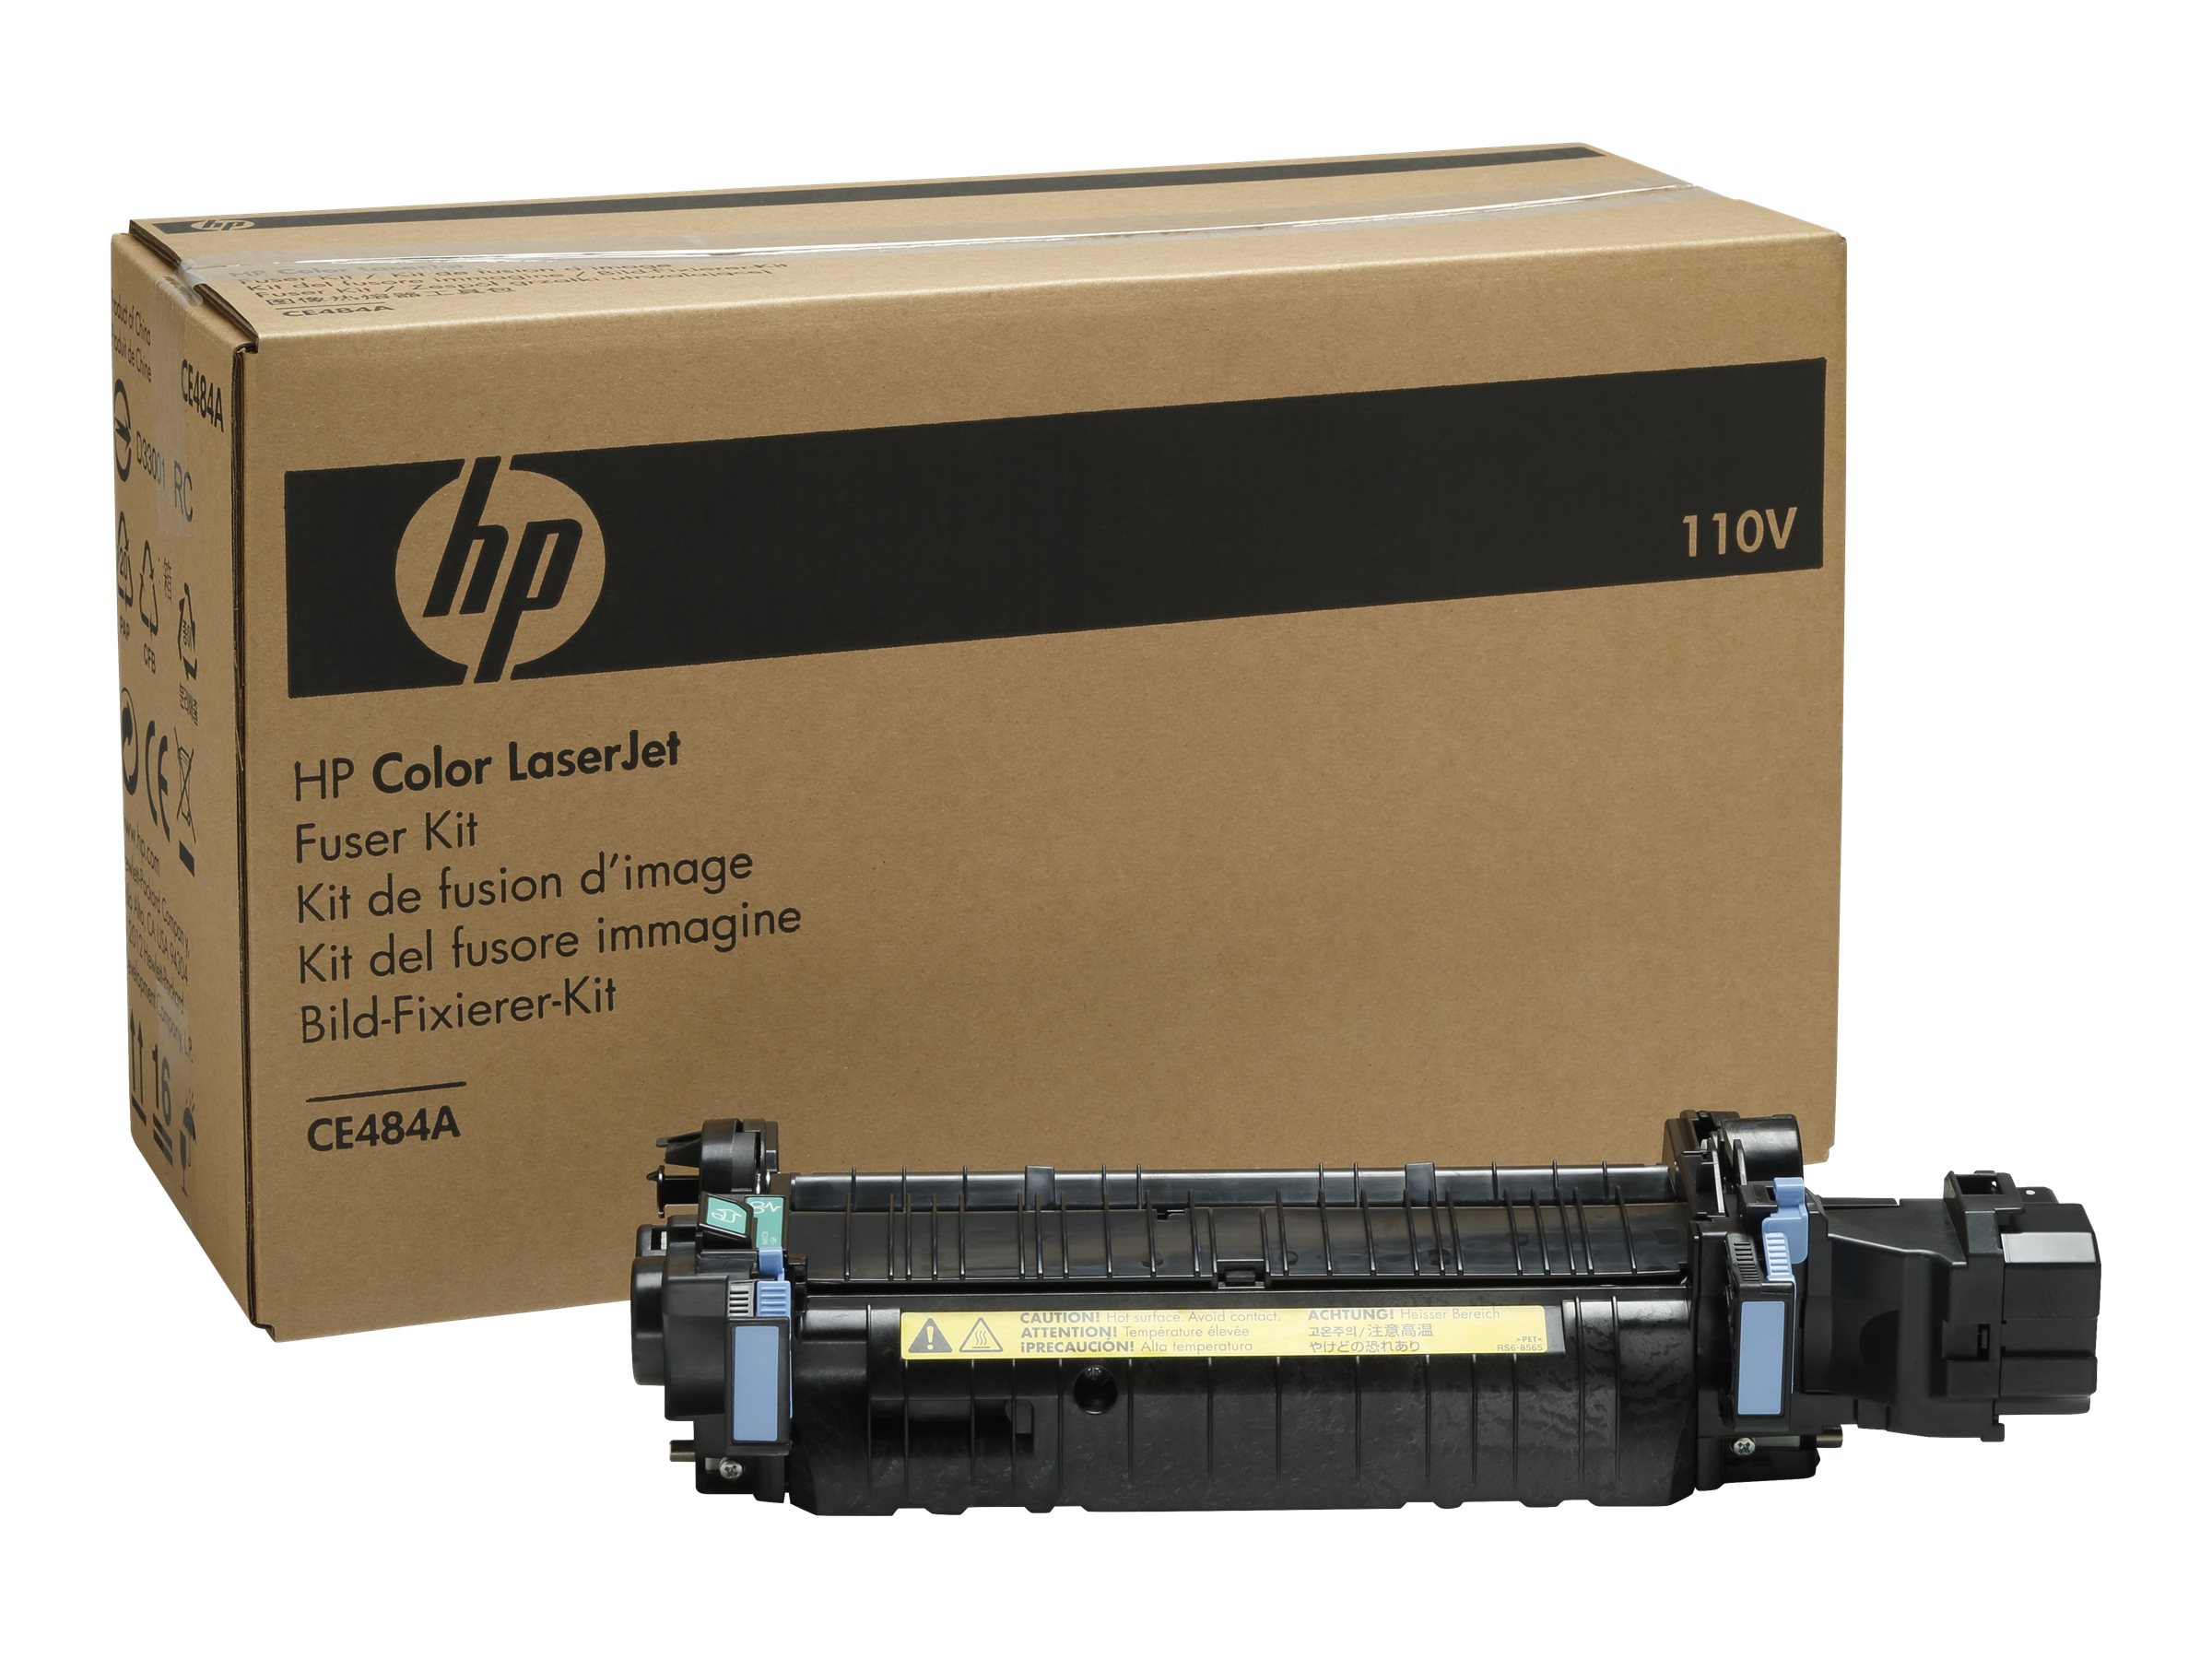 HP - (220 V) - kit unité de fusion - pour Color LaserJet Enterprise MFP M575; LaserJet Pro MFP M570 - CE506A - Autres consommables et kits d'entretien pour imprimante